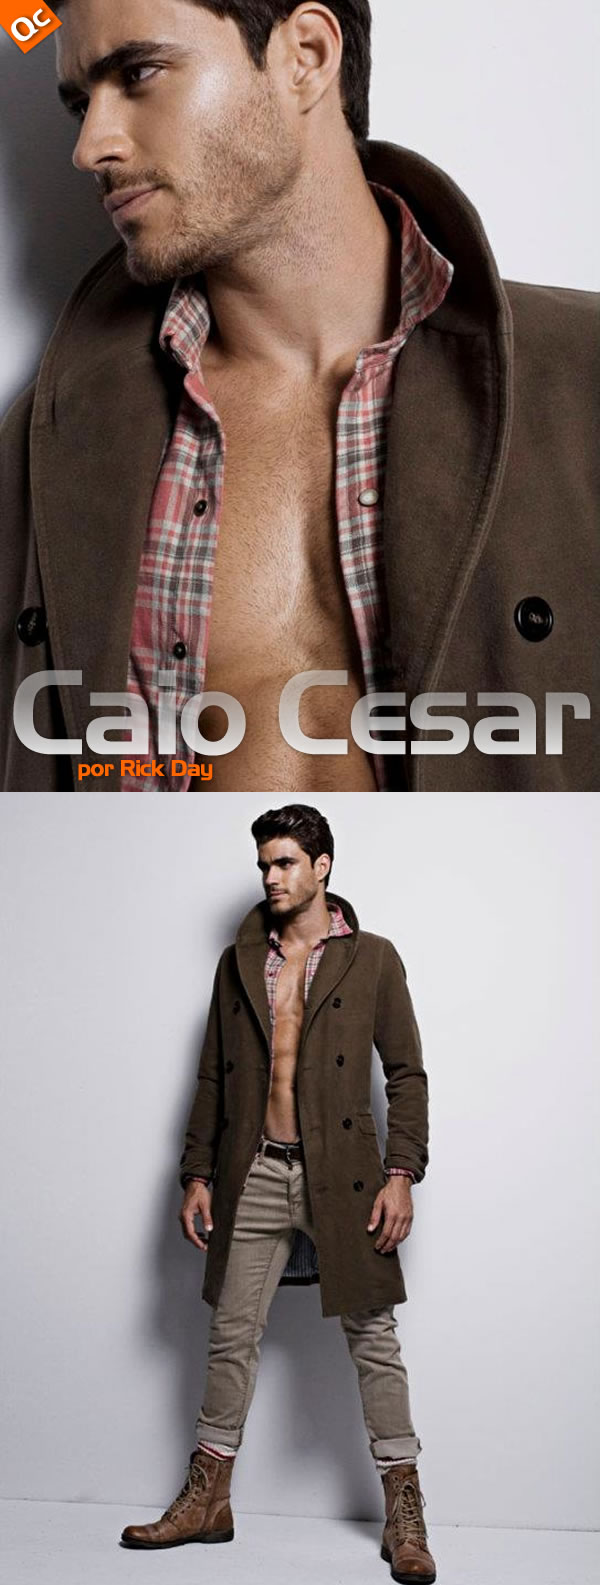 Rick Day: Caio Cesar